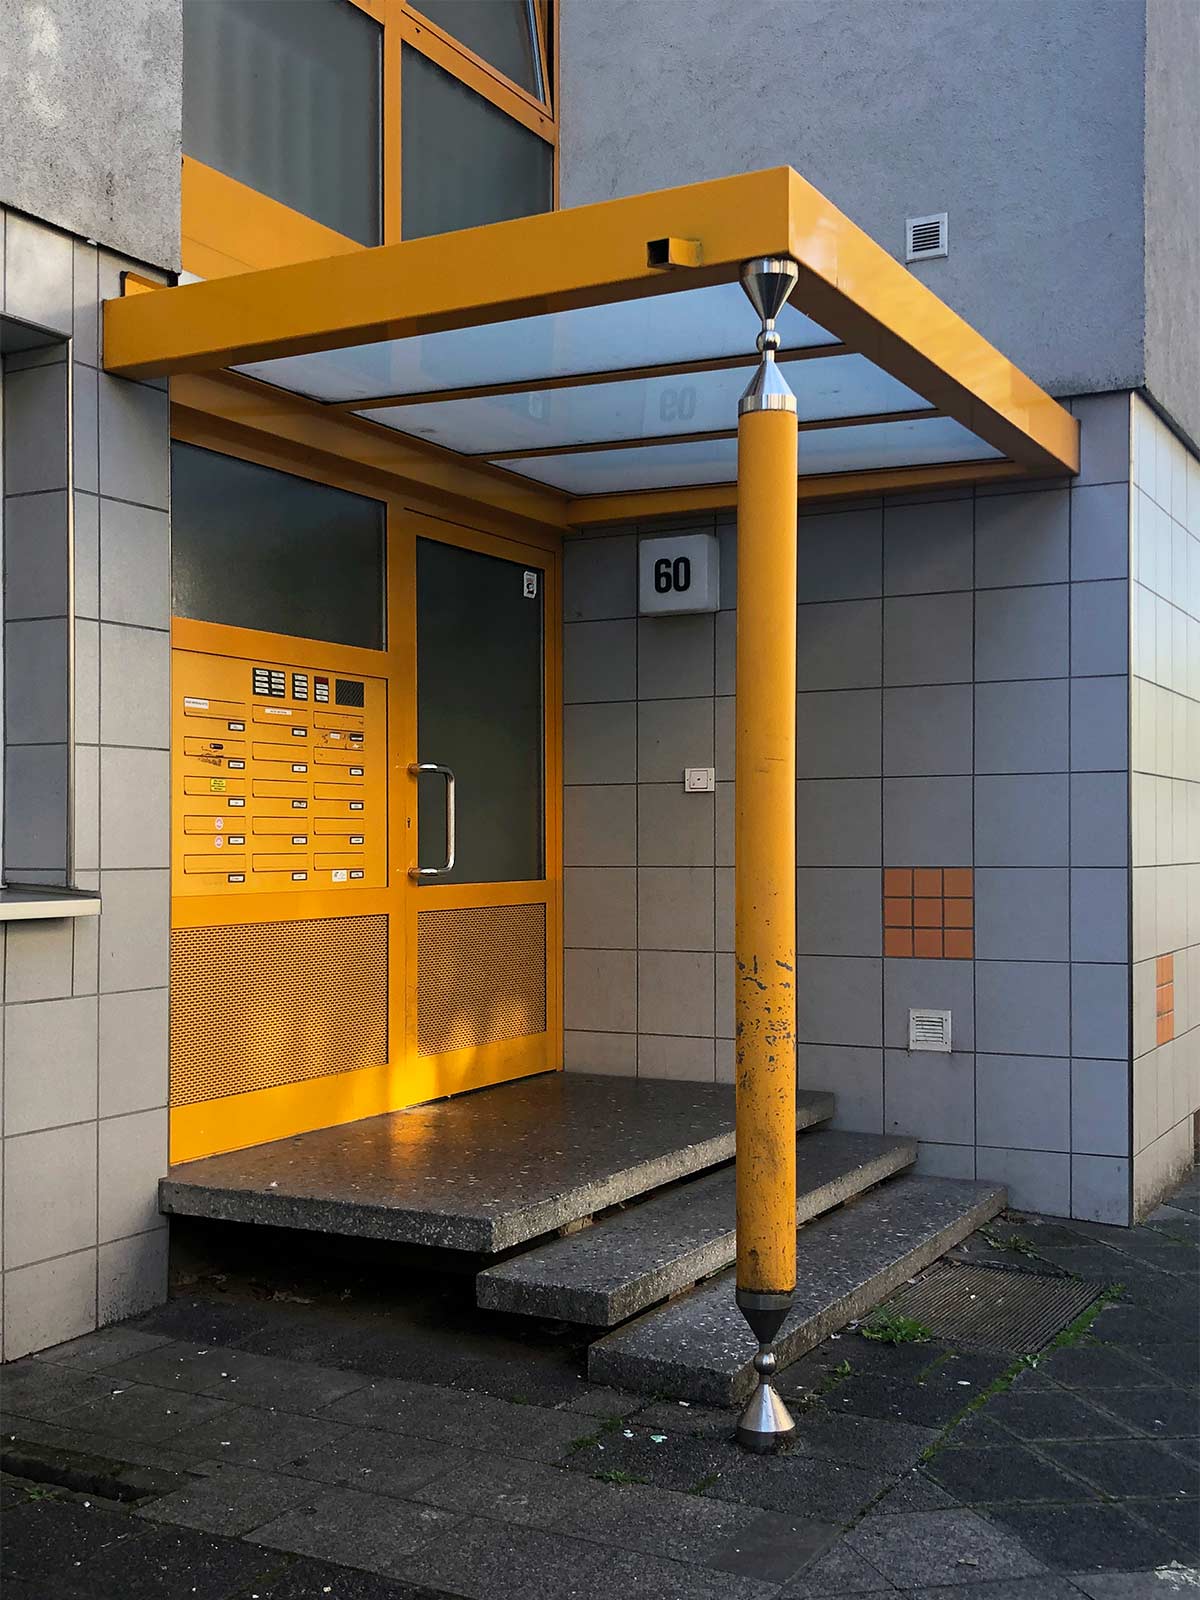 Vordach und Stützsäule in gelber Farbe an Wohnhaus in Offenbach